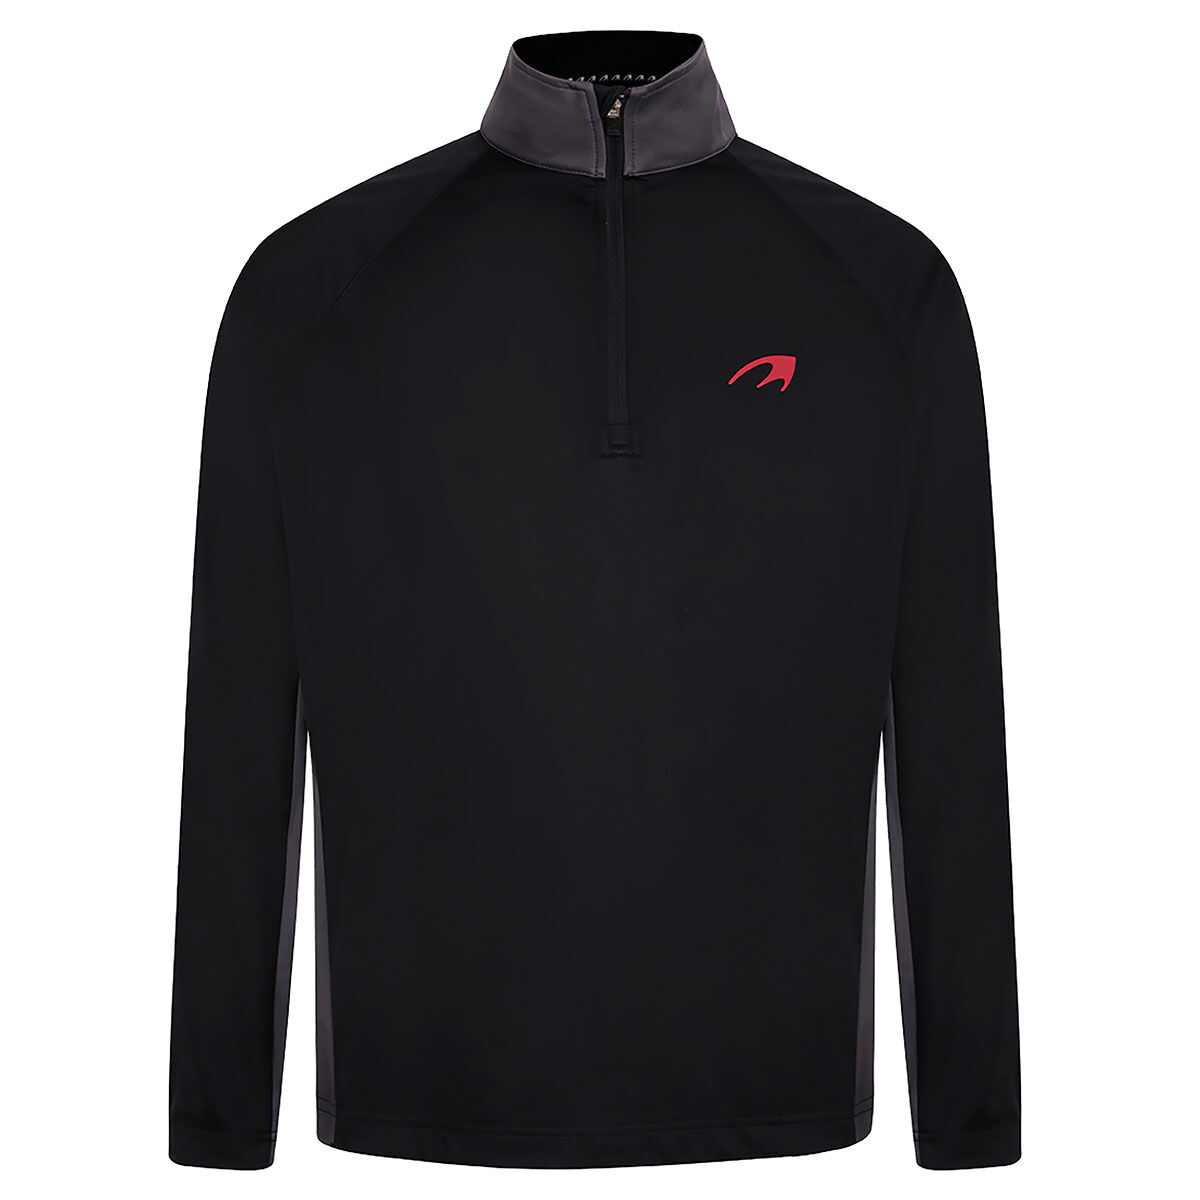 Vêtement intermédiaire Benross Side Logo, homme, Petit, Noir/Gris/Rouge | Online Golf